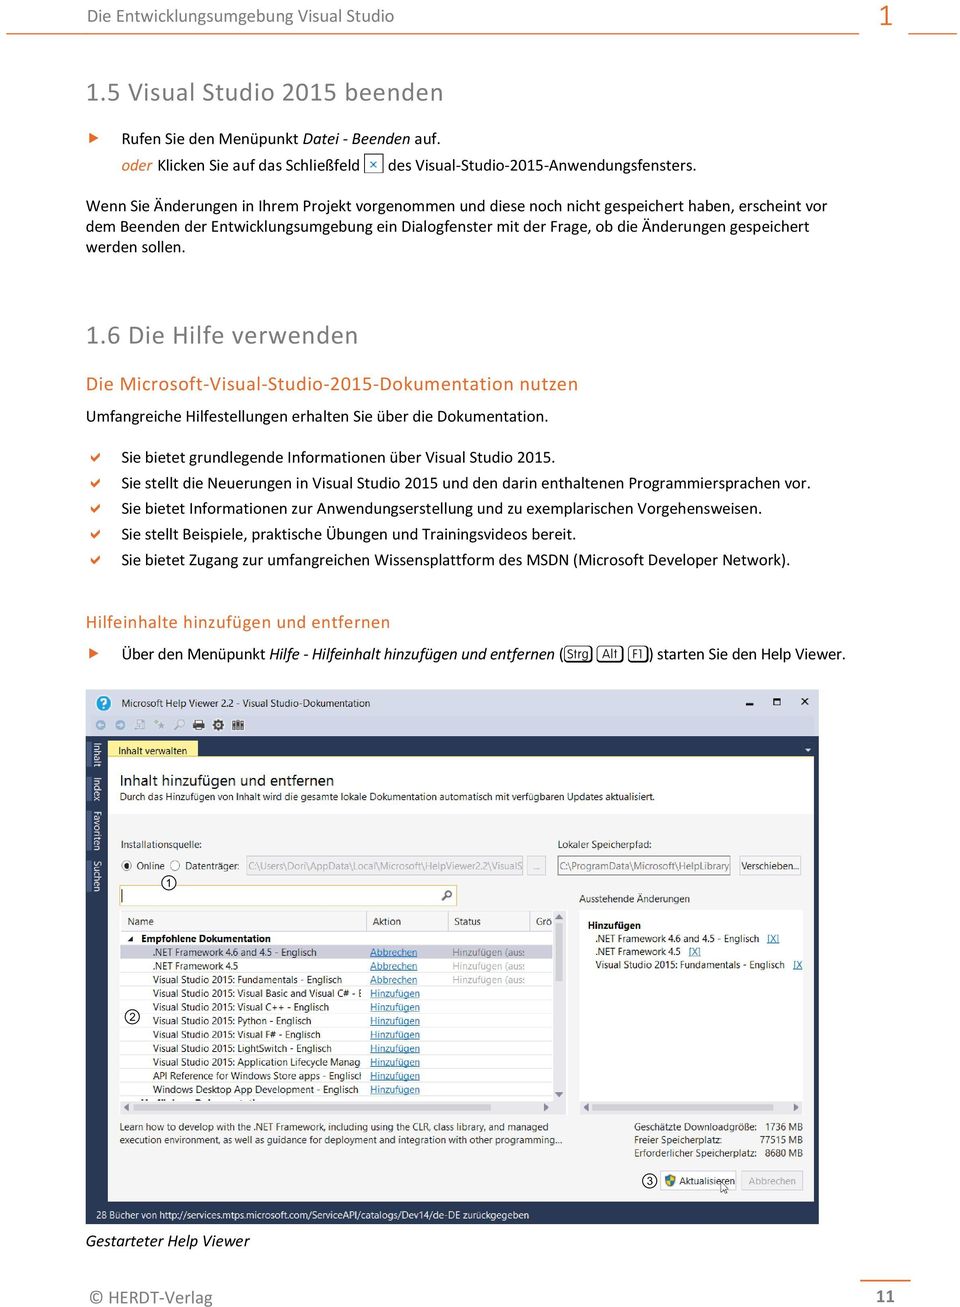 gespeichert werden sollen. 1.6 Die Hilfe verwenden Die Microsoft-Visual-Studio-2015-Dokumentation nutzen Umfangreiche Hilfestellungen erhalten Sie über die Dokumentation.